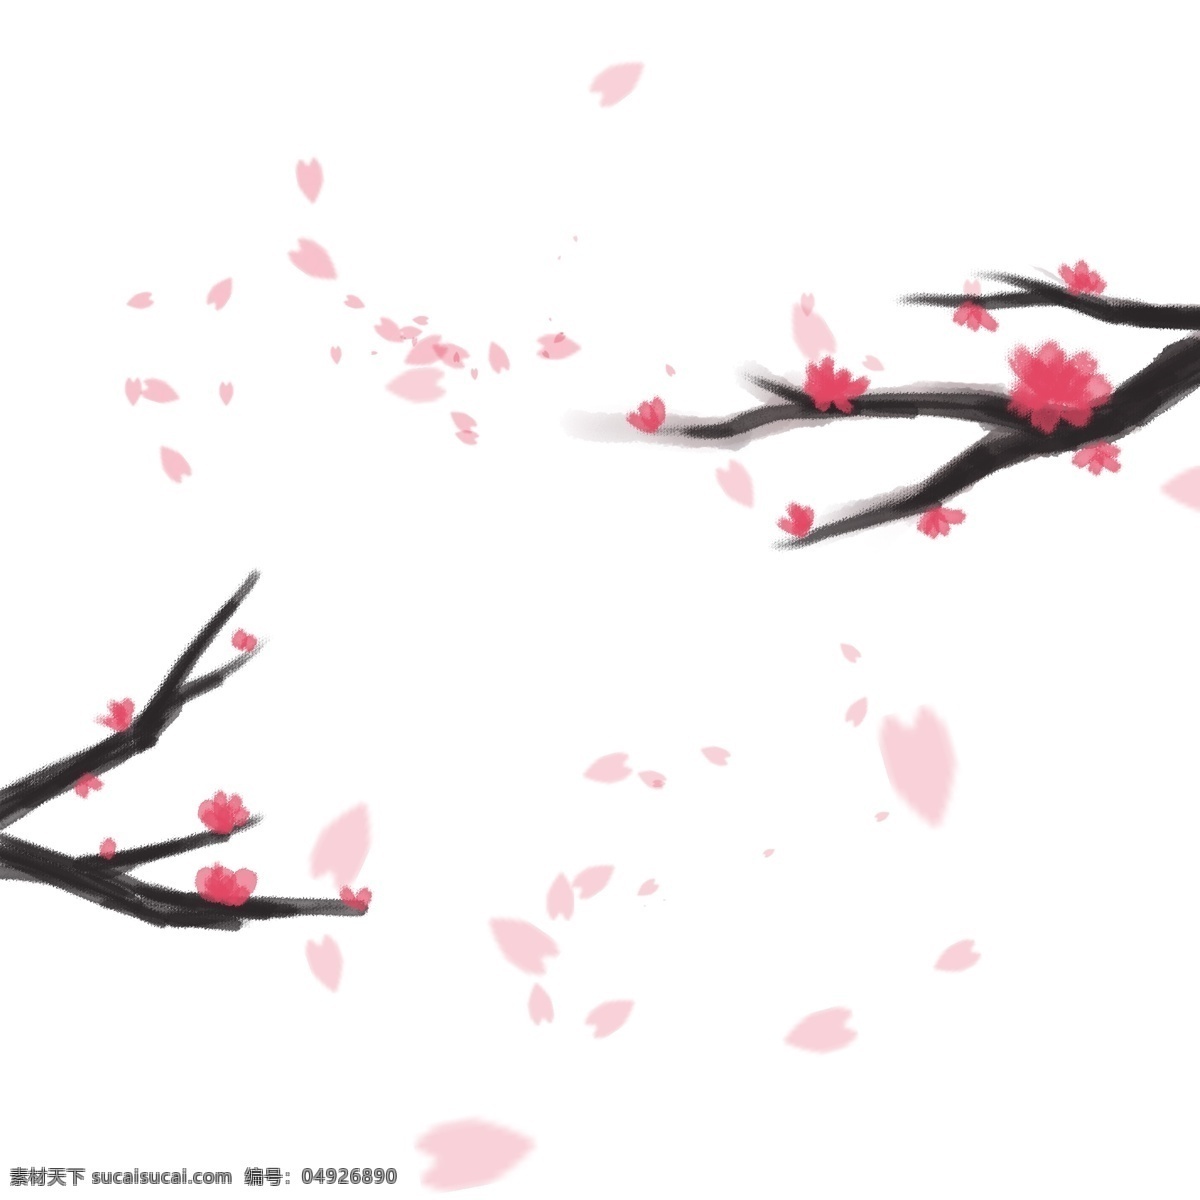 中国 风 手绘 花瓣 飘落 新年 梅花 中国风 红色 红梅 装饰 落花 树枝 粉色 水墨风 风吹